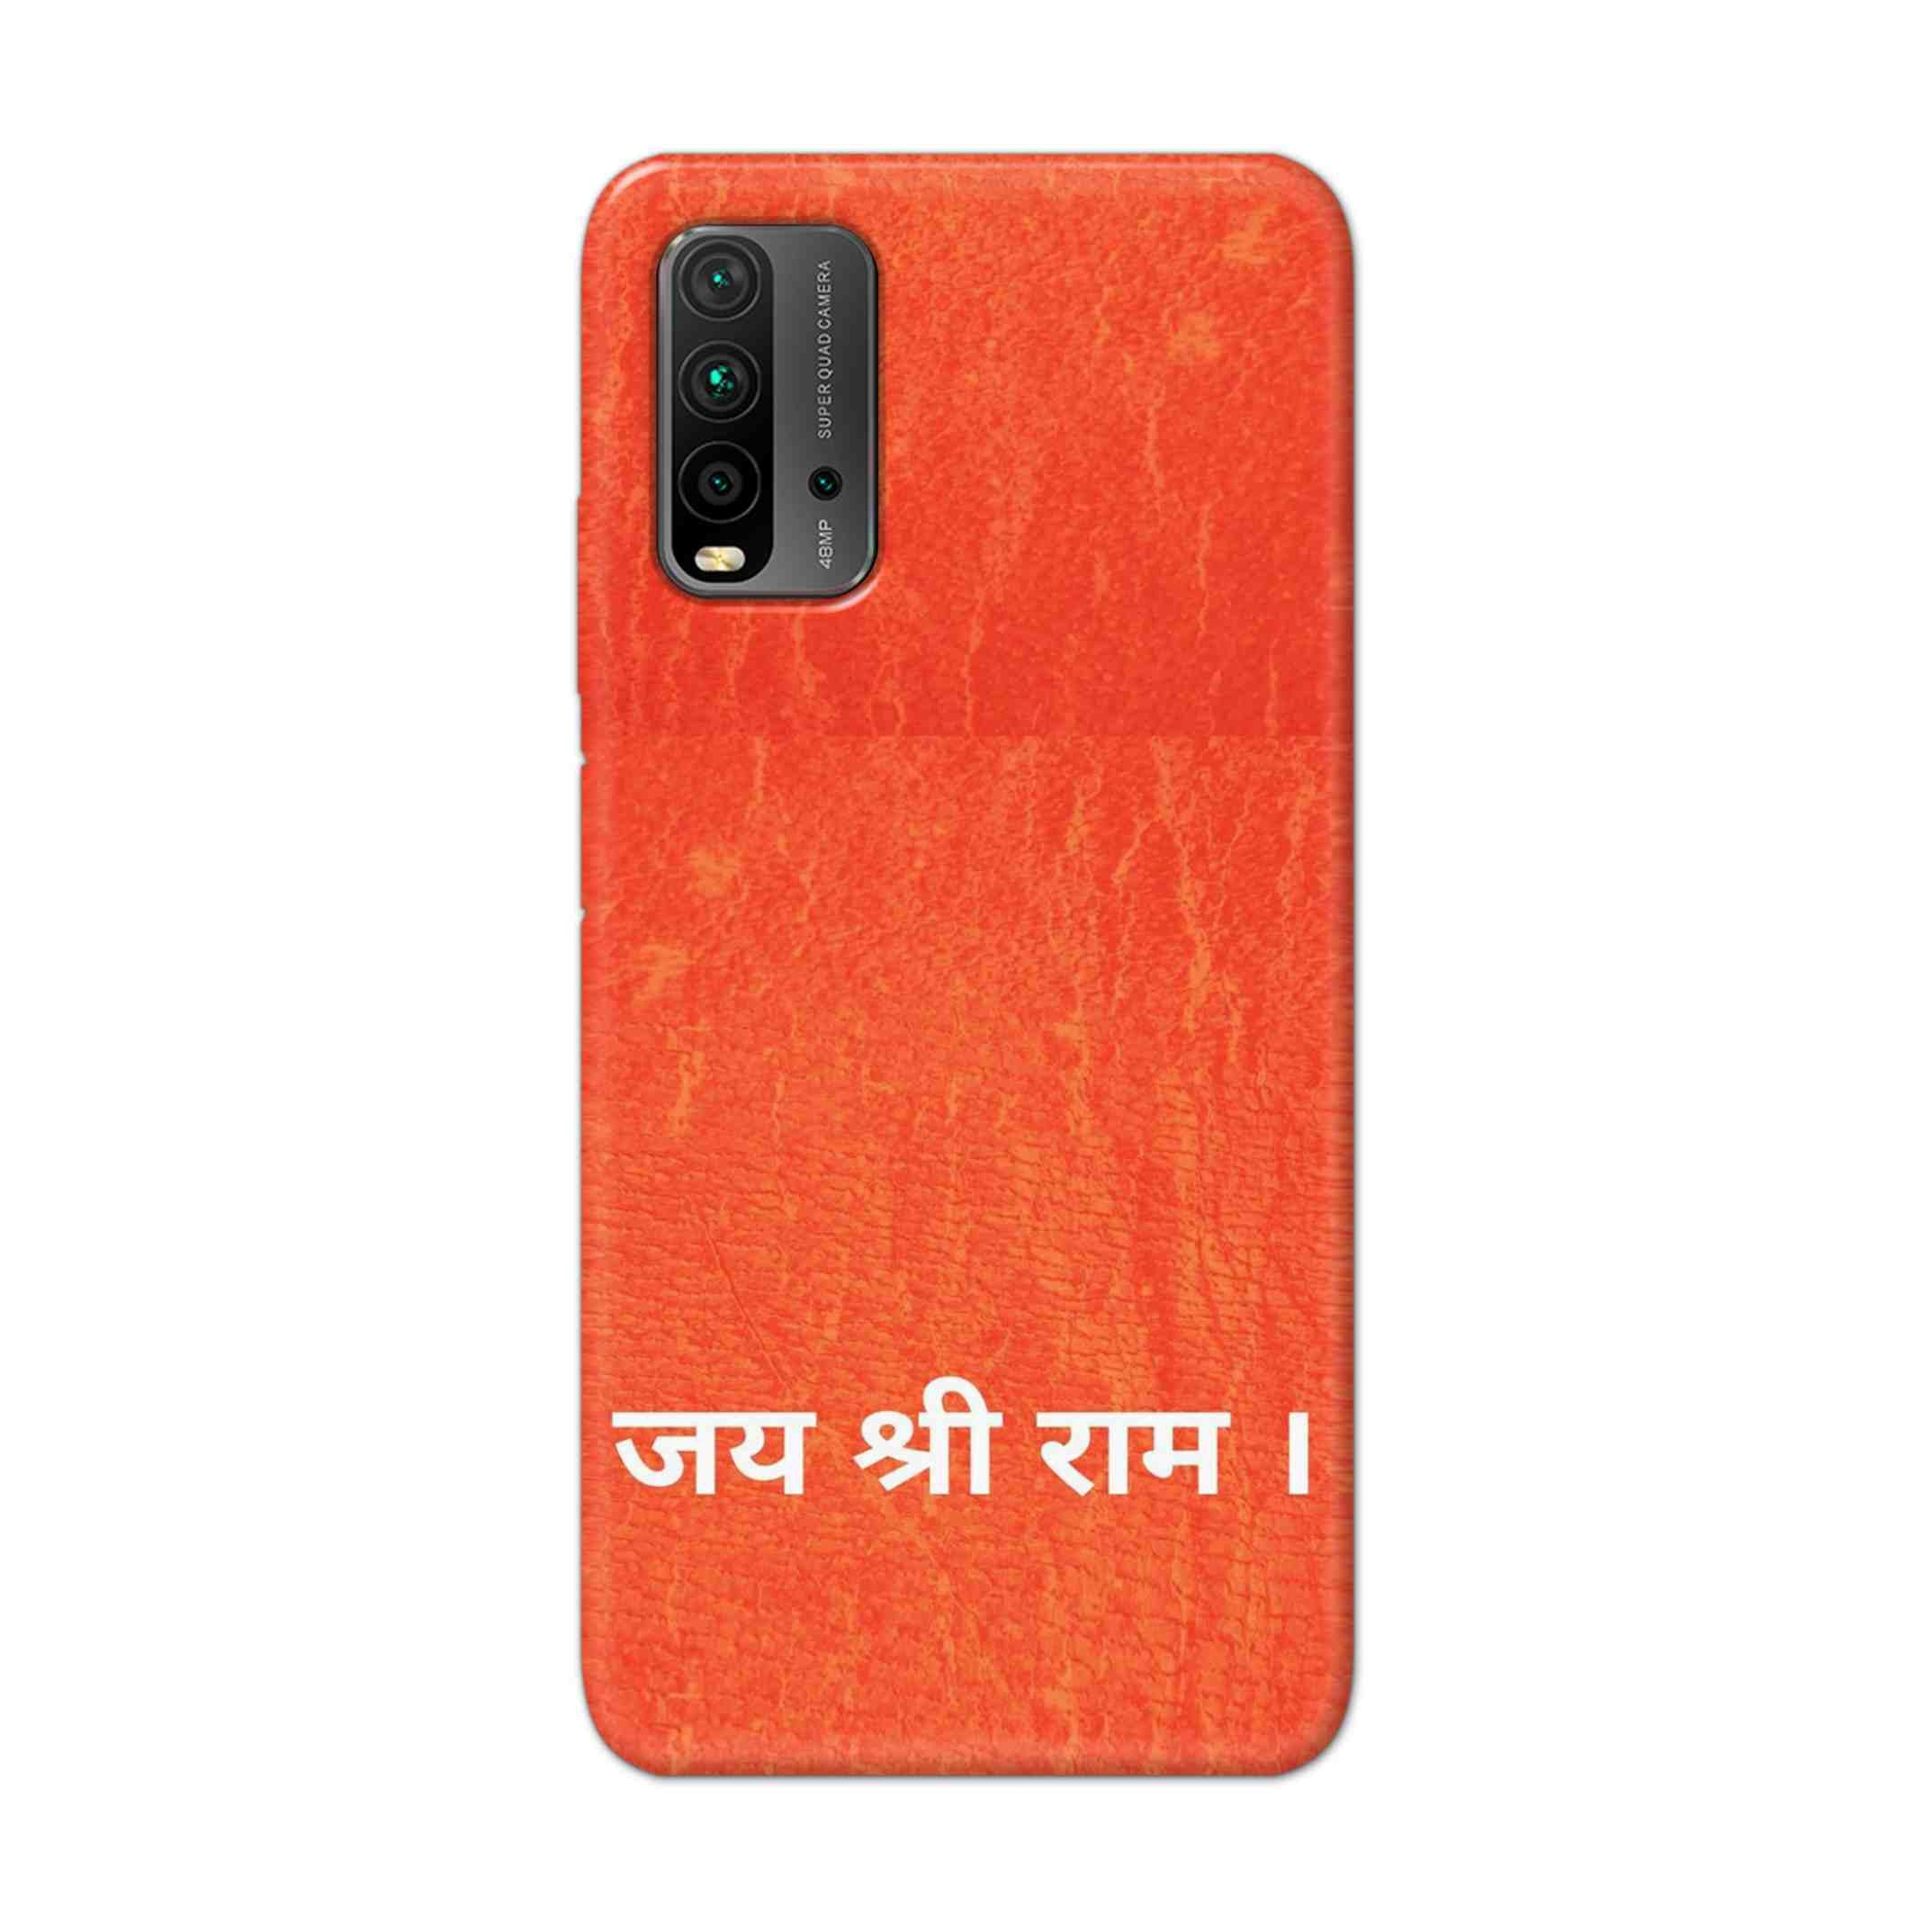 Buy Jai Shree Ram Hard Back Mobile Phone Case Cover For Redmi 9 Power Online